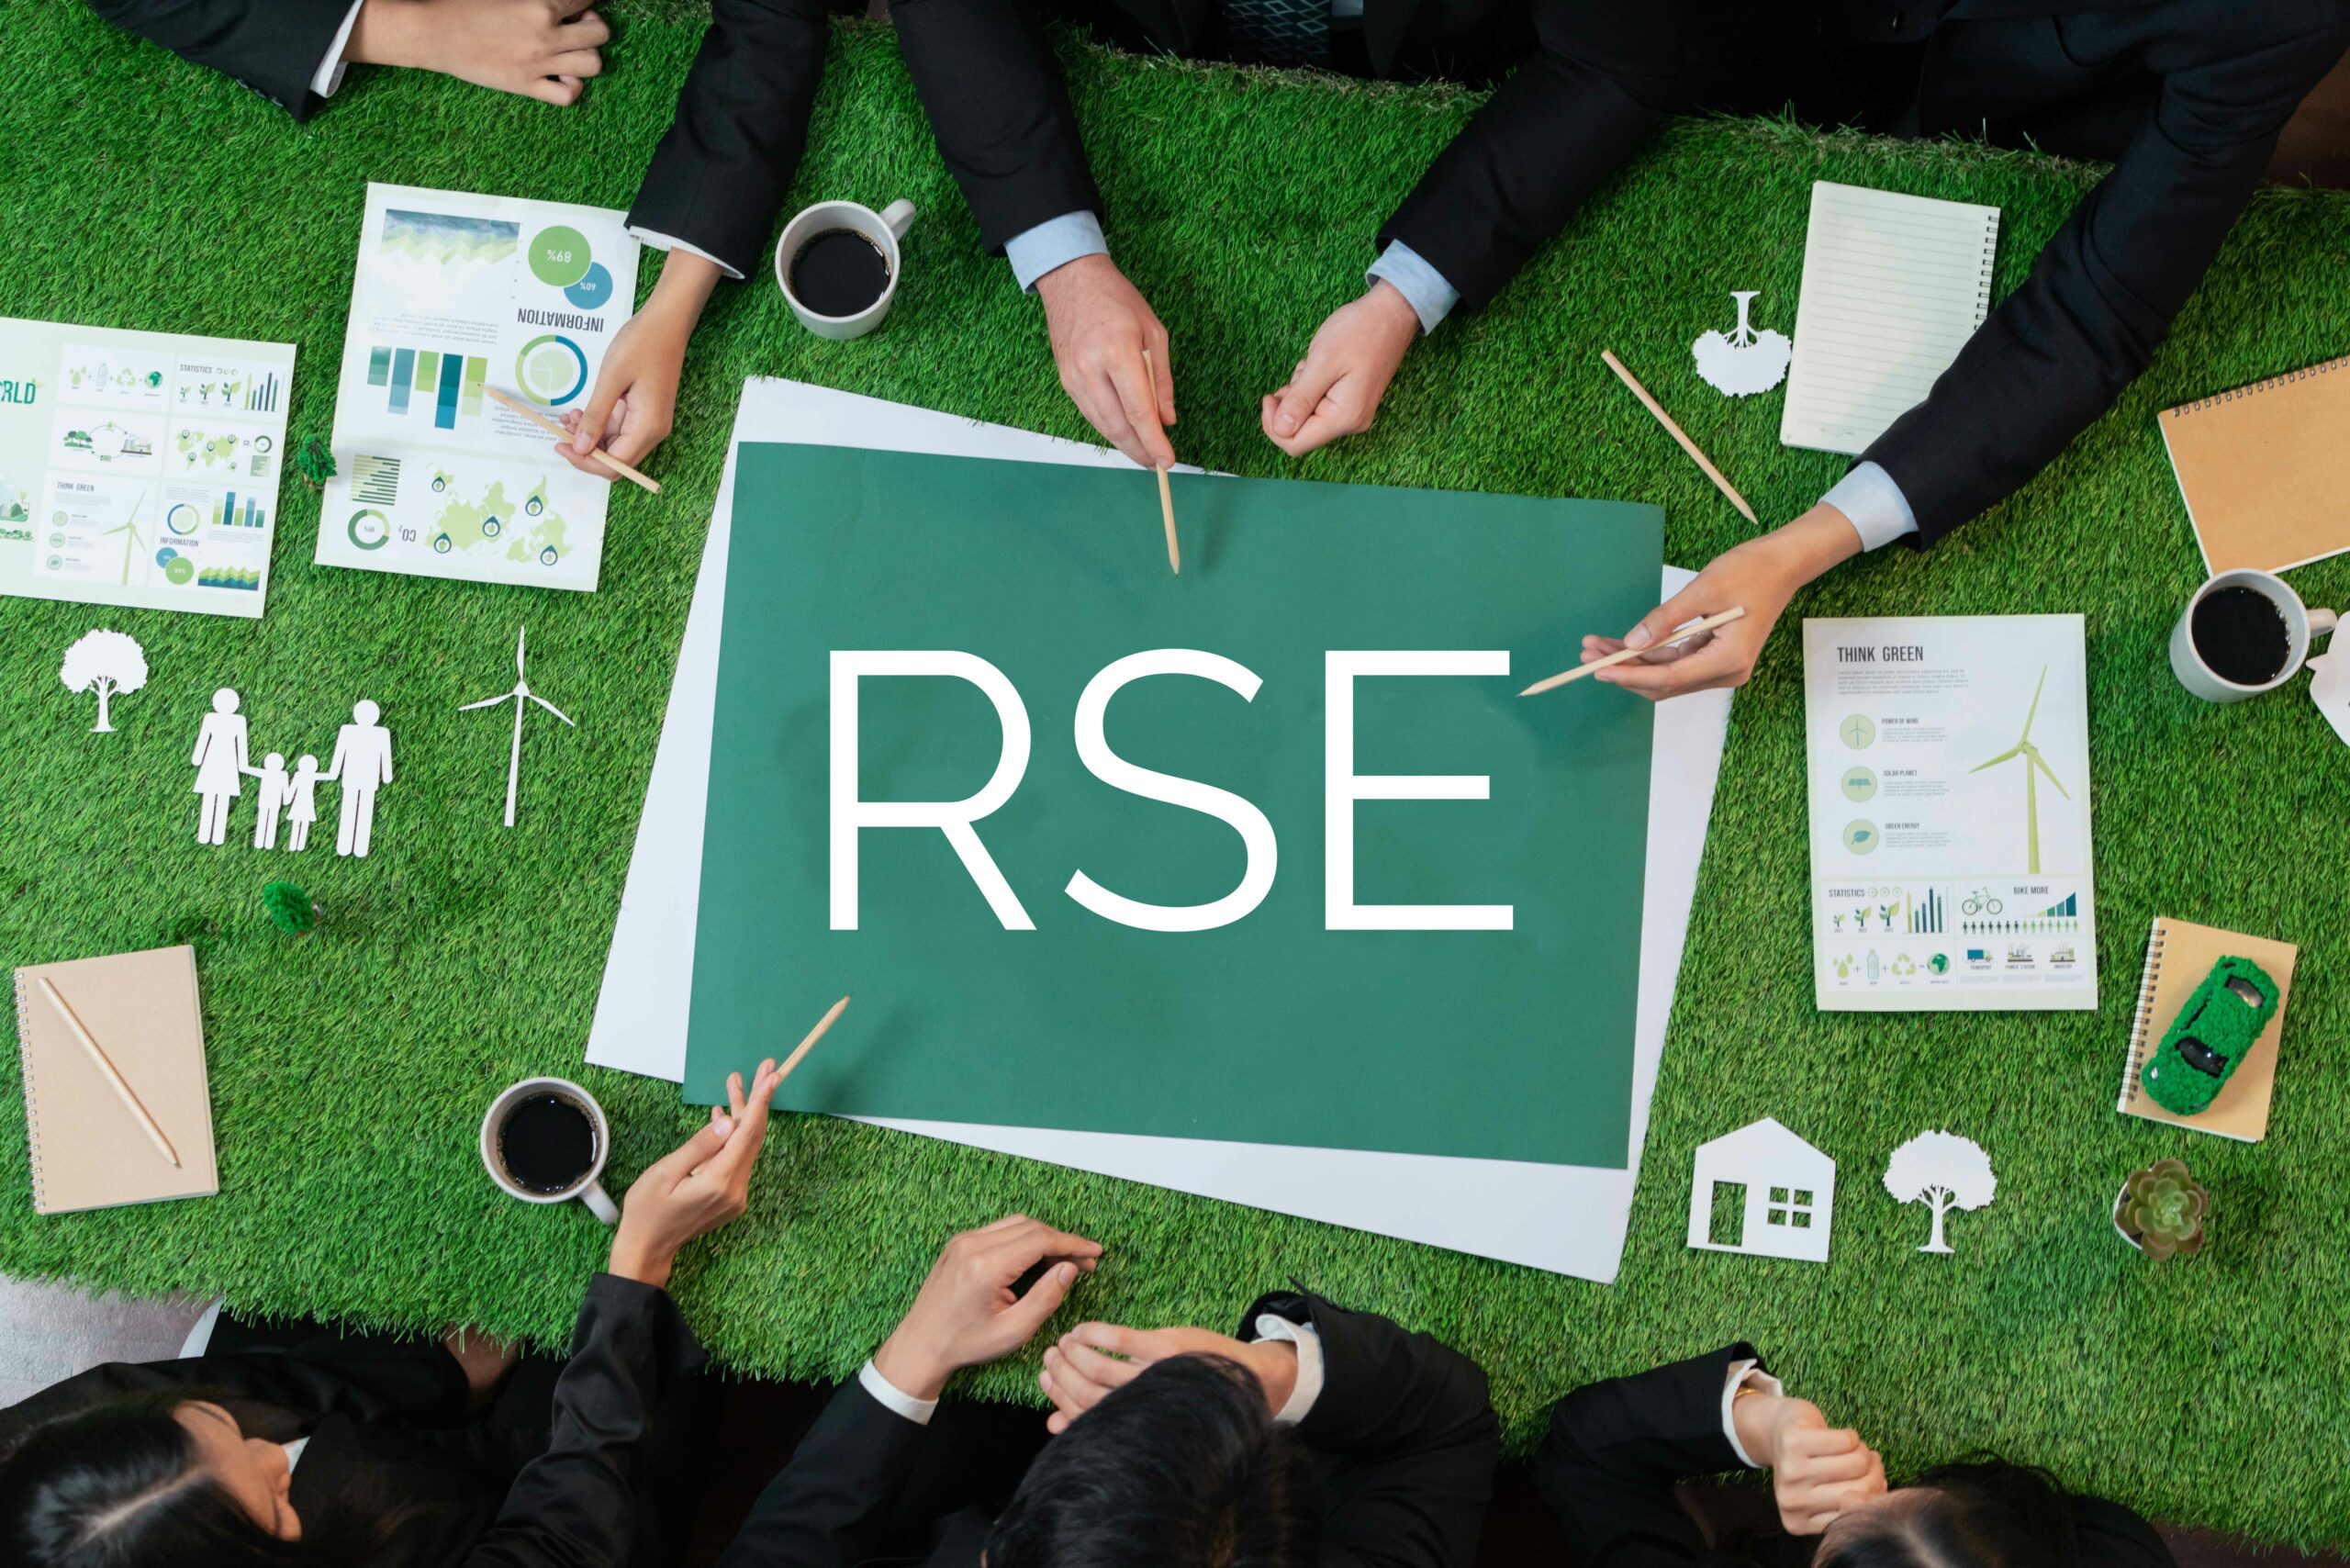 Reporting extra-financier : rédiger son rapport pour mettre en valeur sa démarche RSE